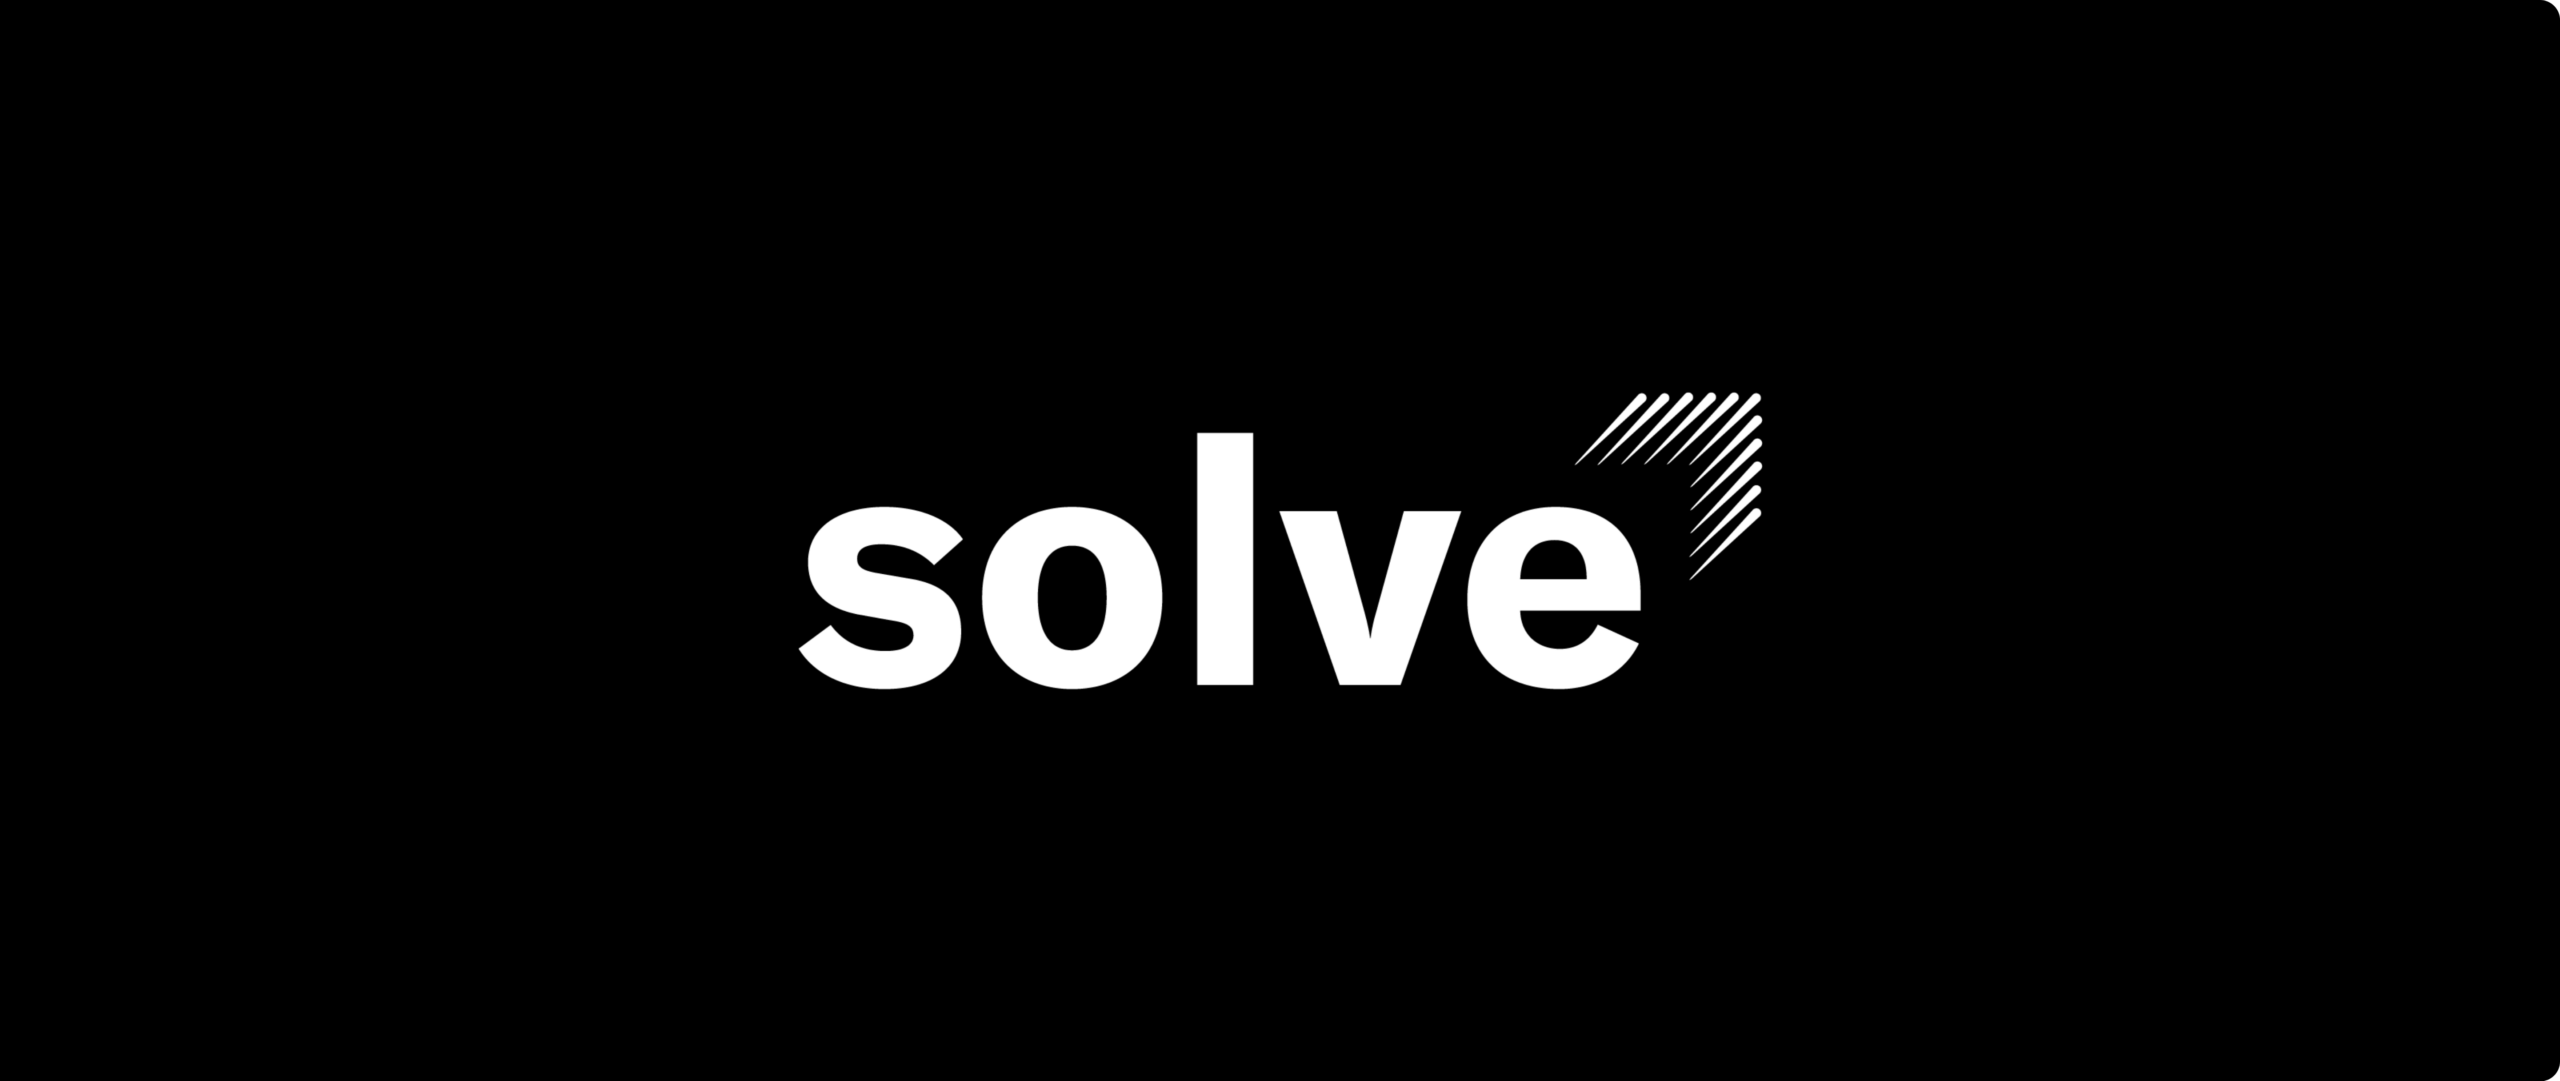 coxi_solve_logo_fondnoir